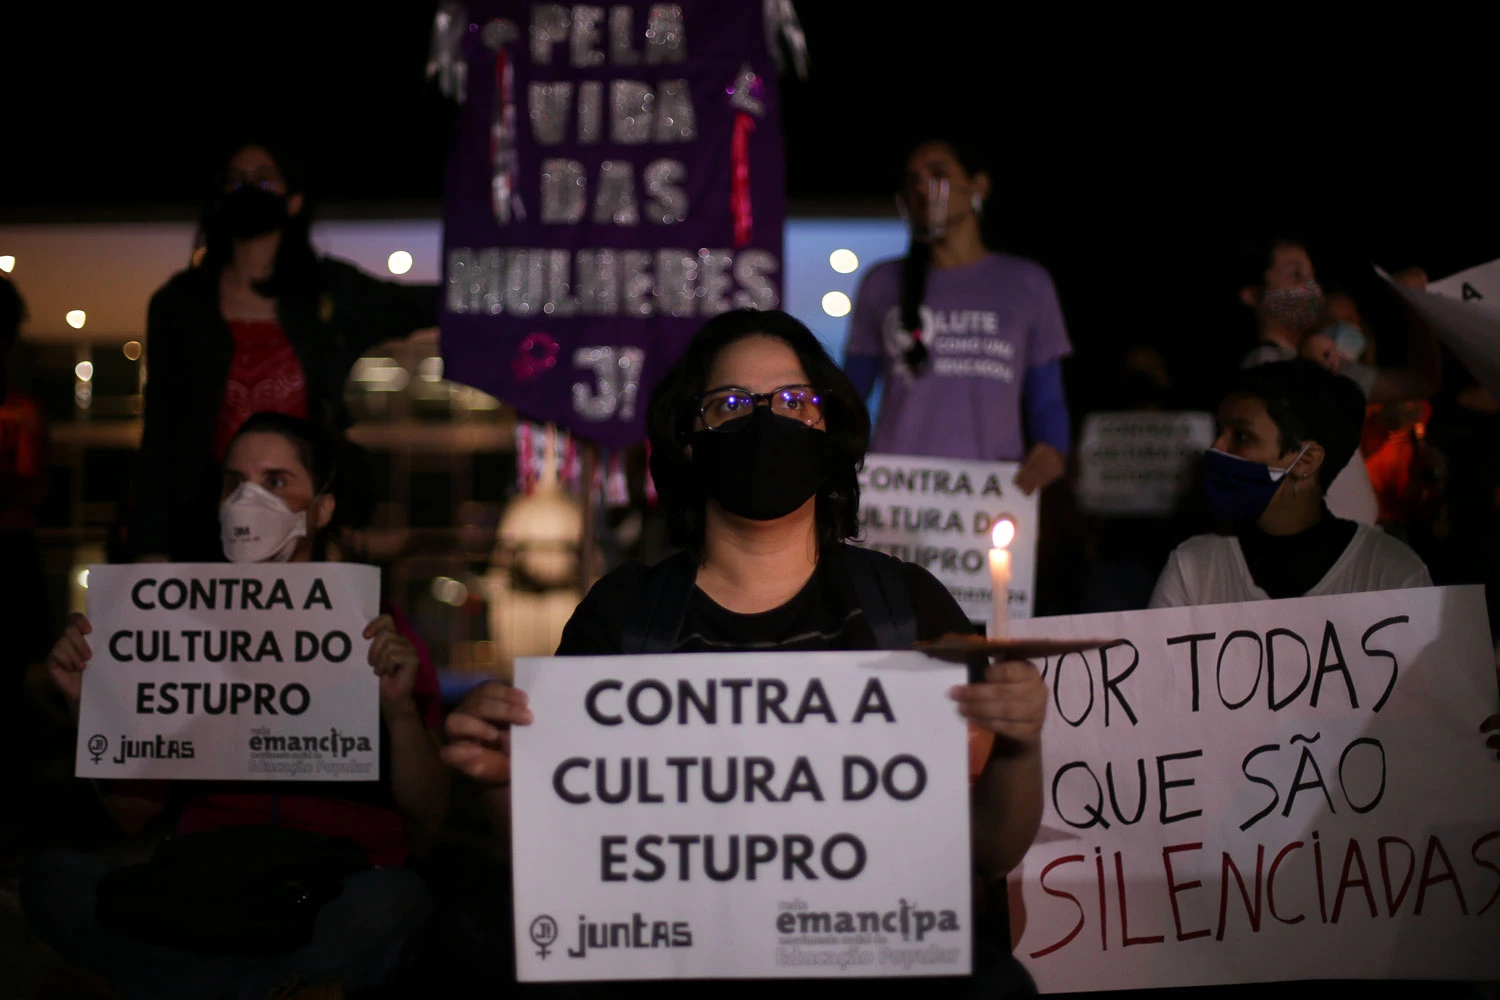 Mulheres de movimentos sociais fazem manifestação por justiça no caso de Mariana Ferrer e contra a cultura do estupro, em frente ao STF, em Brasília (DF), em 4 de novembro de 2020. Foto: Pedro Ladeira/Folhapress